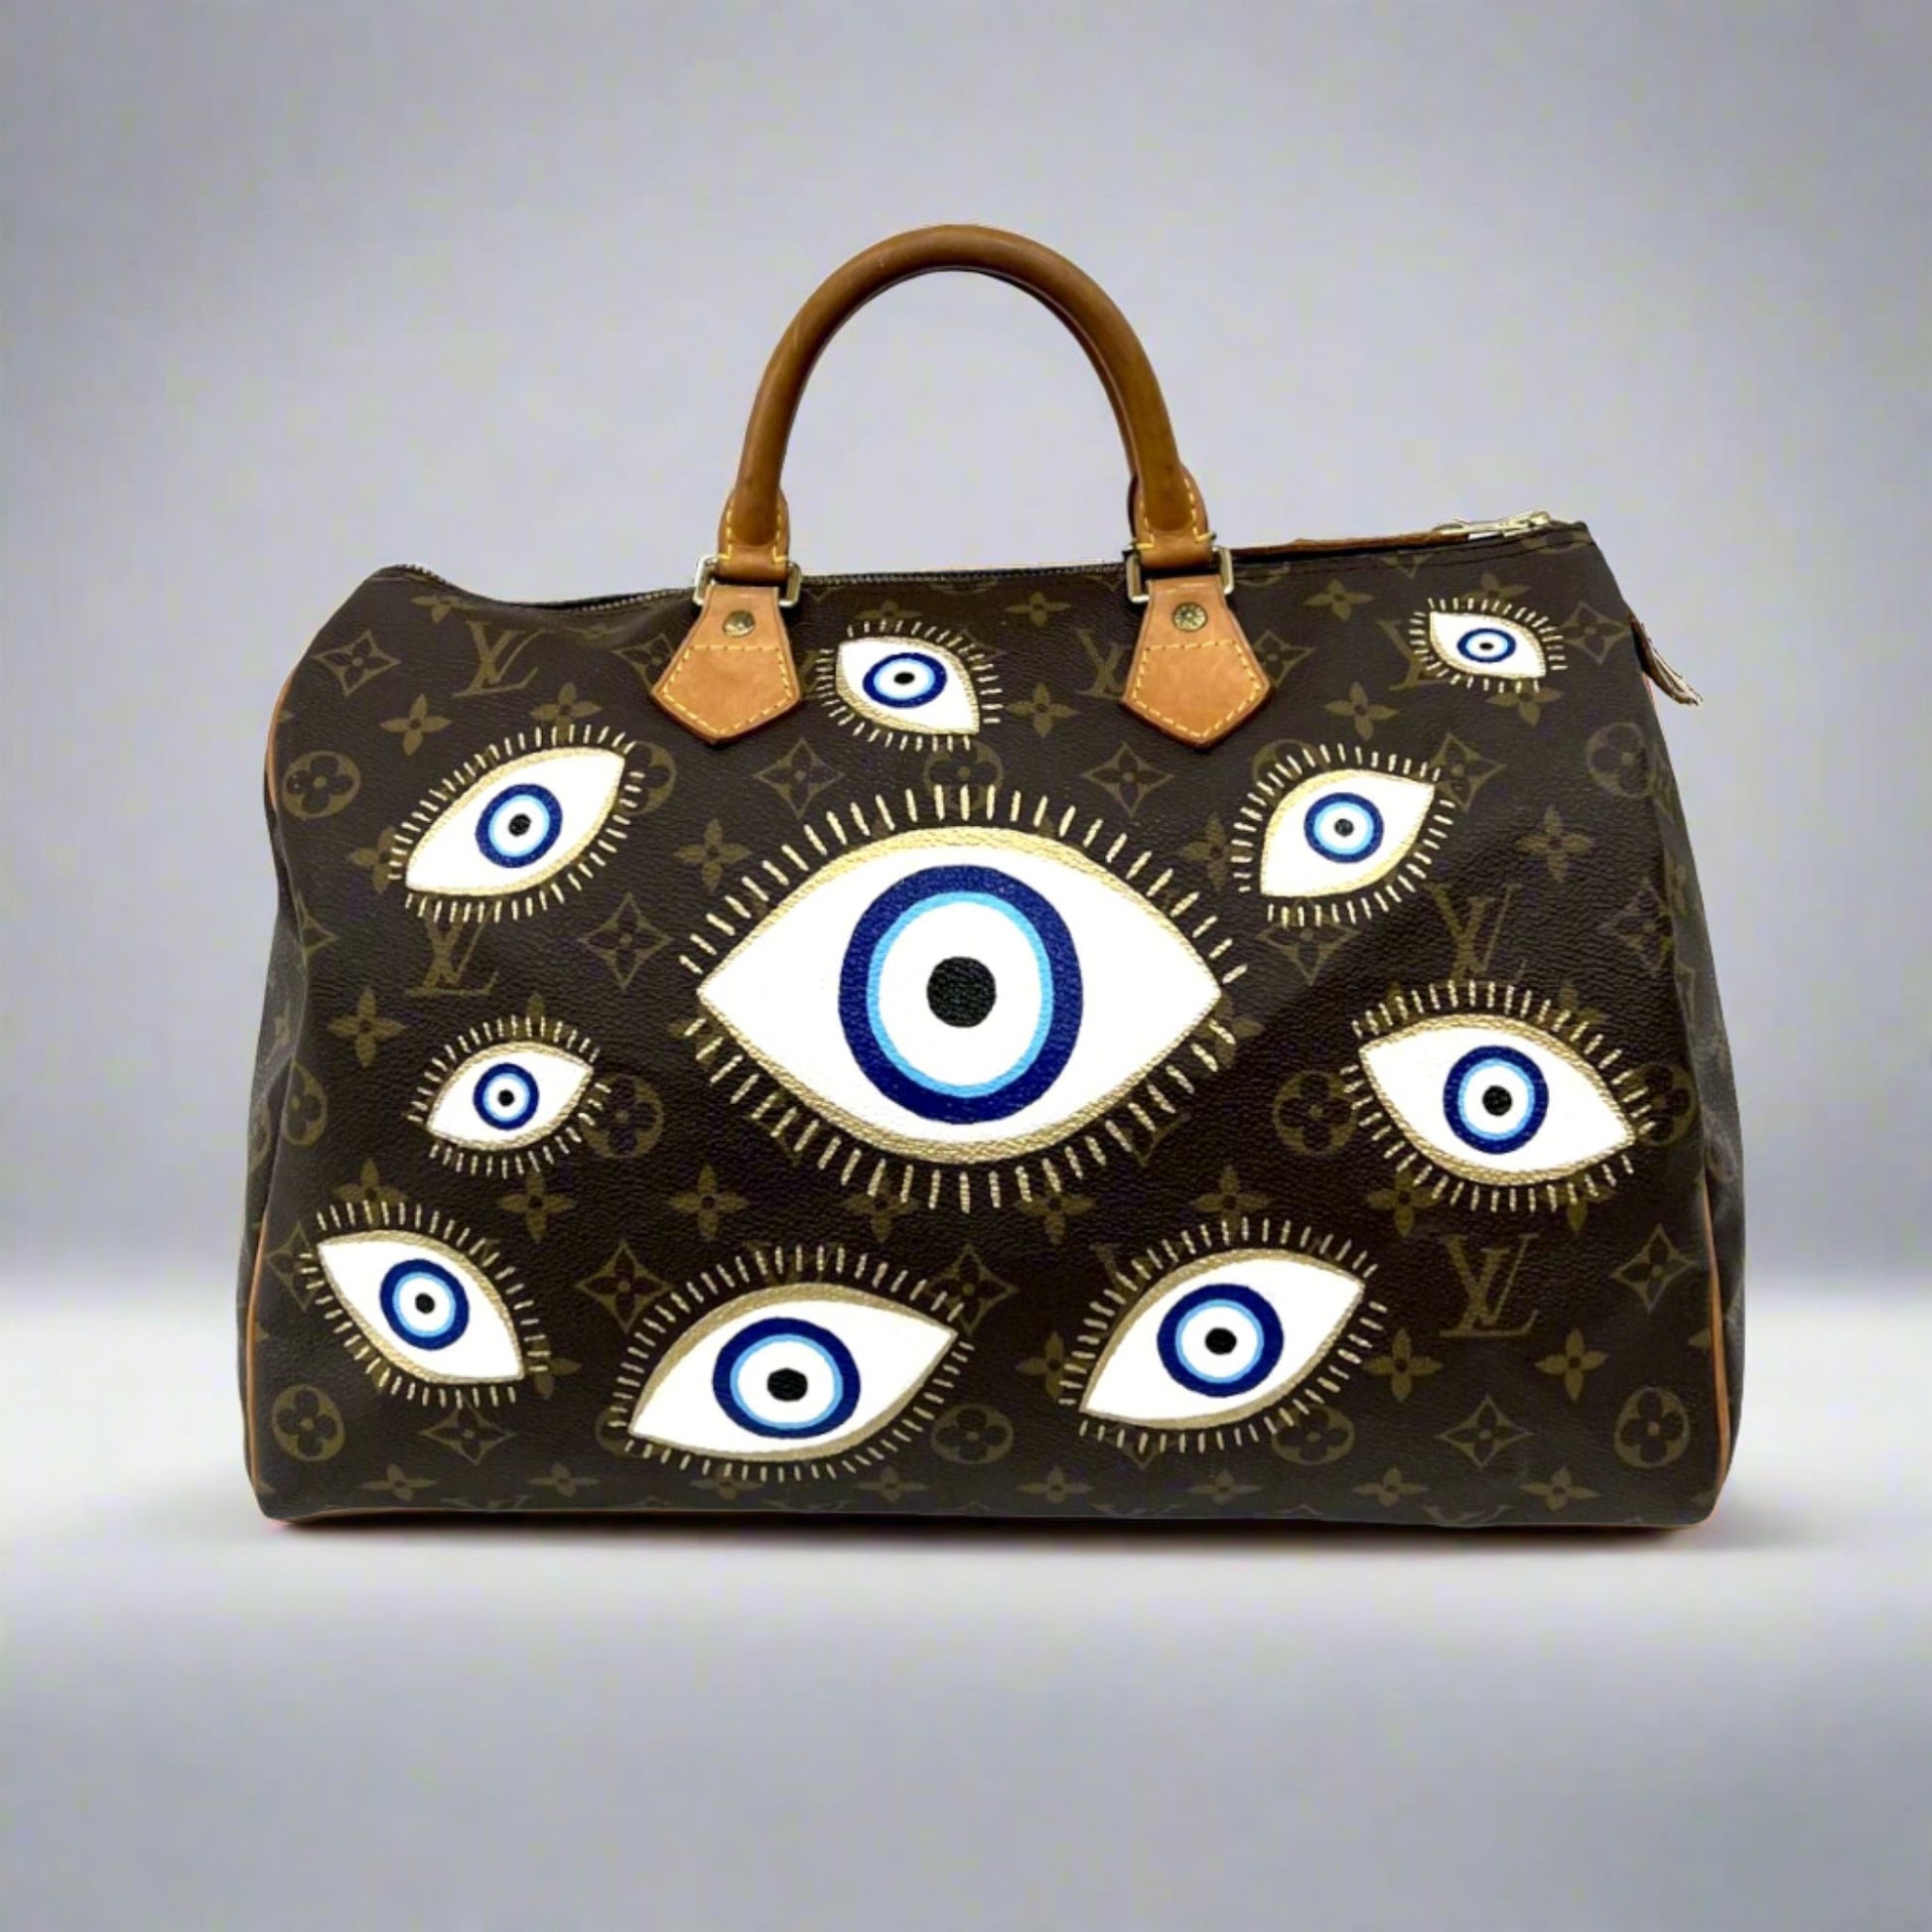 Let's go buy a bag! Shop with me at Louis Vuitton